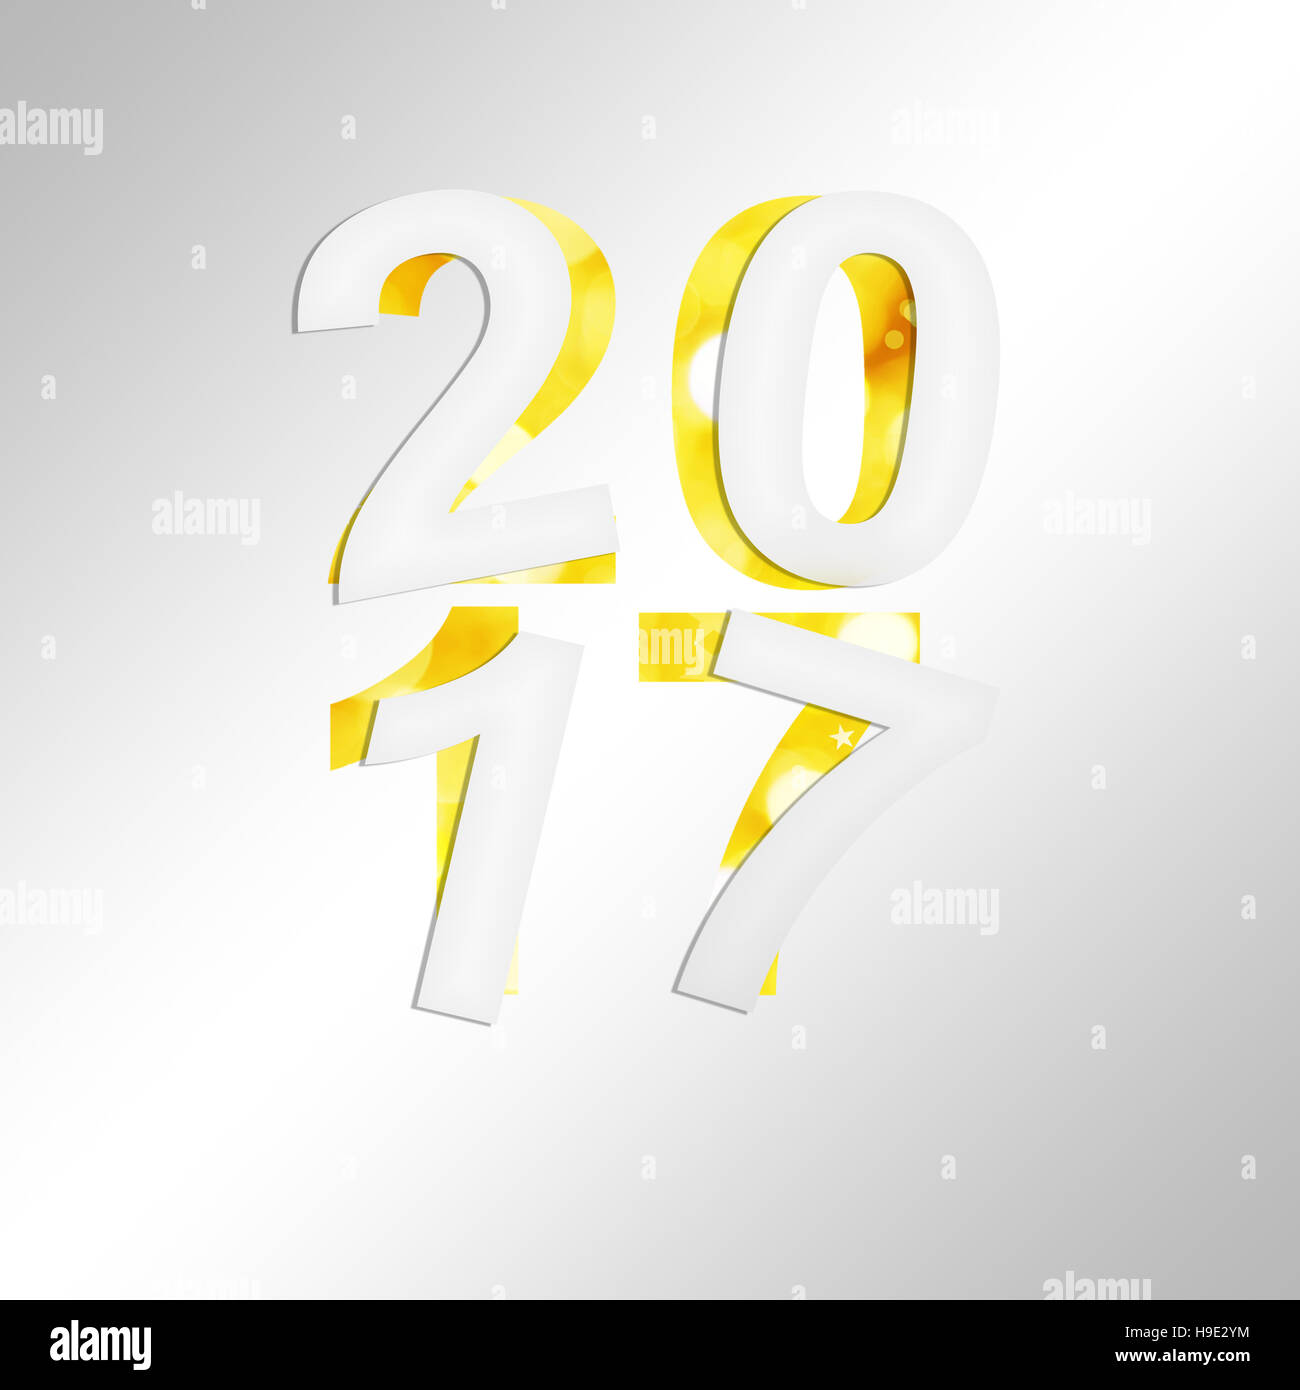 2017 square carte de souhaits avec du papier coupé et fond brillant Banque D'Images